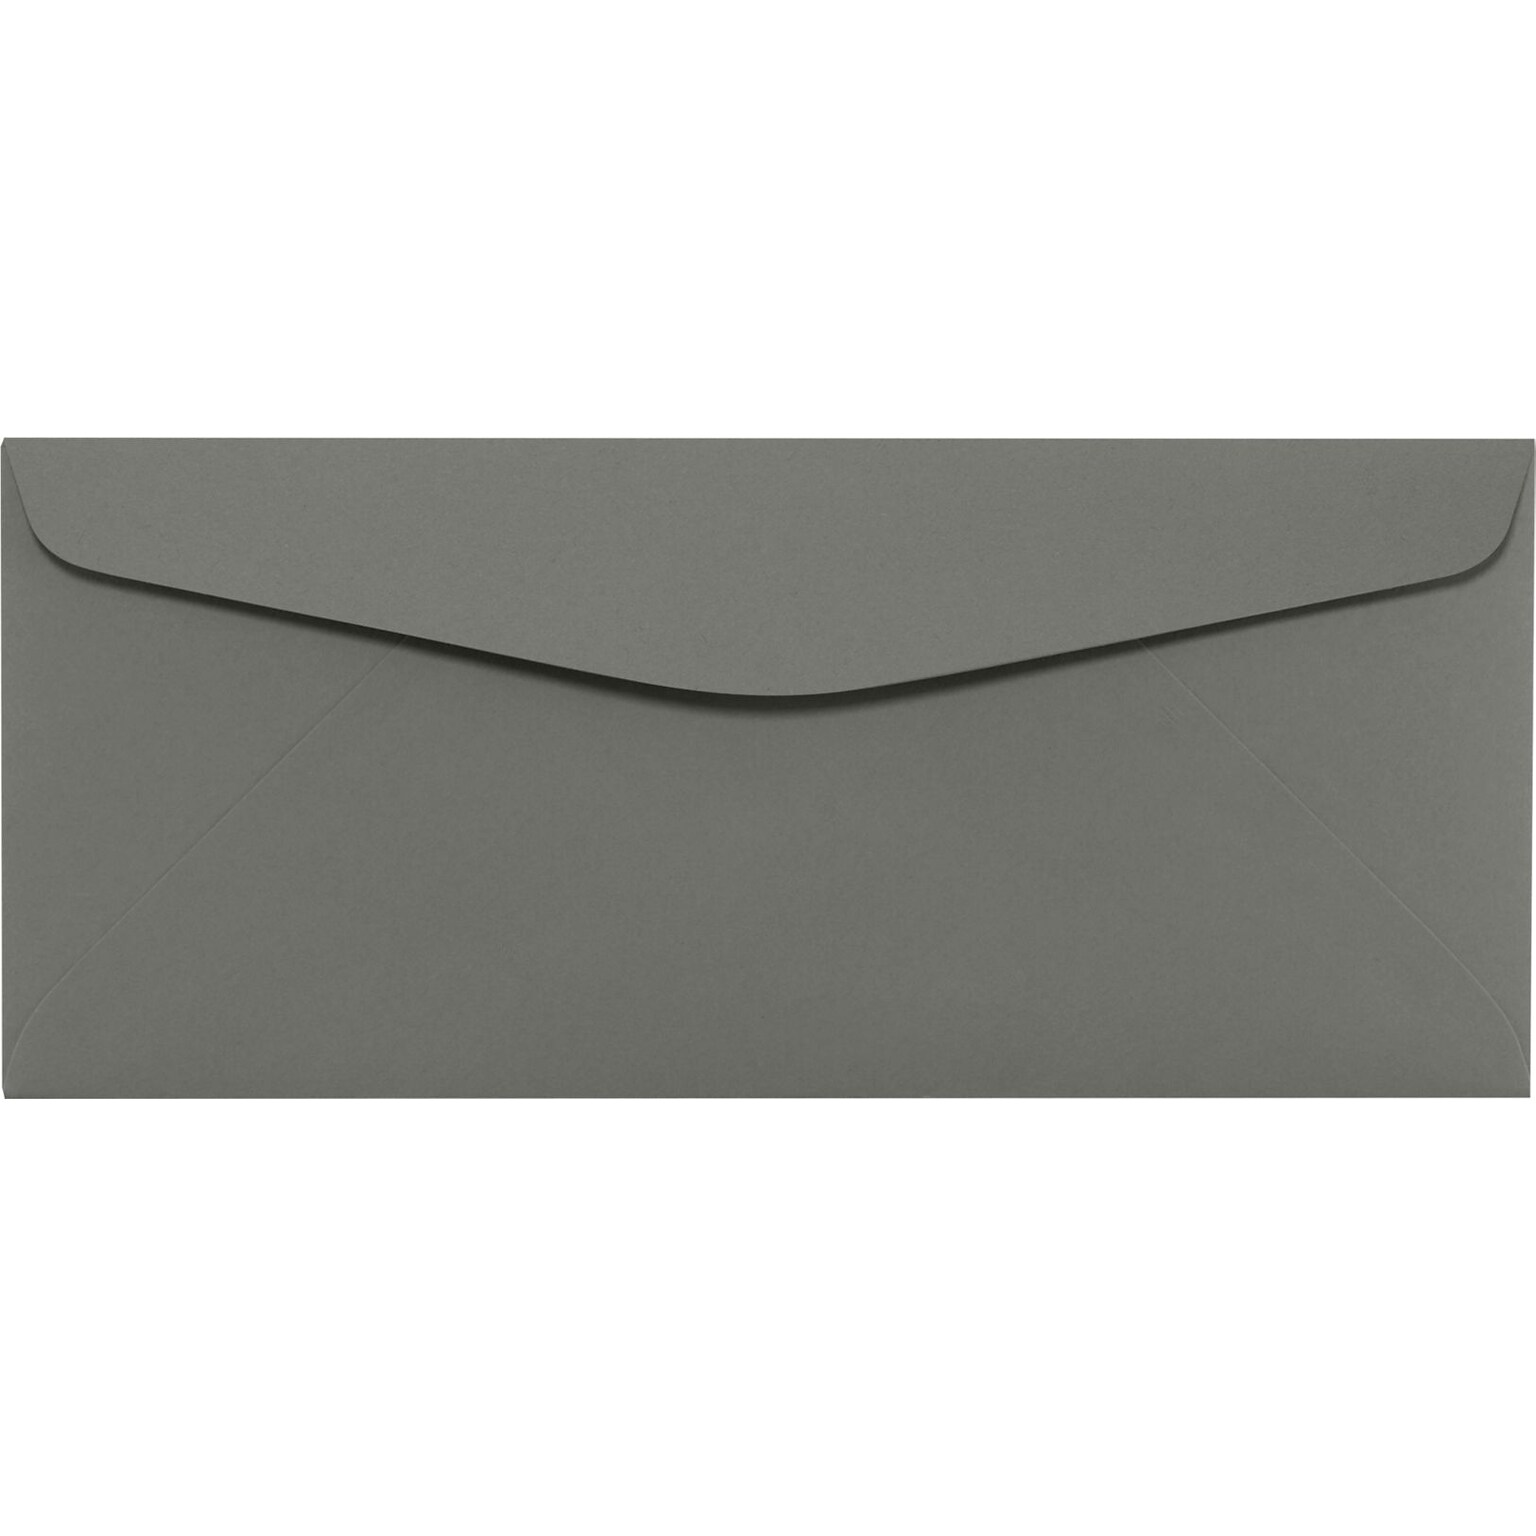 LUX #10 Regular Envelopes (4 1/8 x 9 1/2) 250/Pack, Smoke (LUX-4260-22-250)